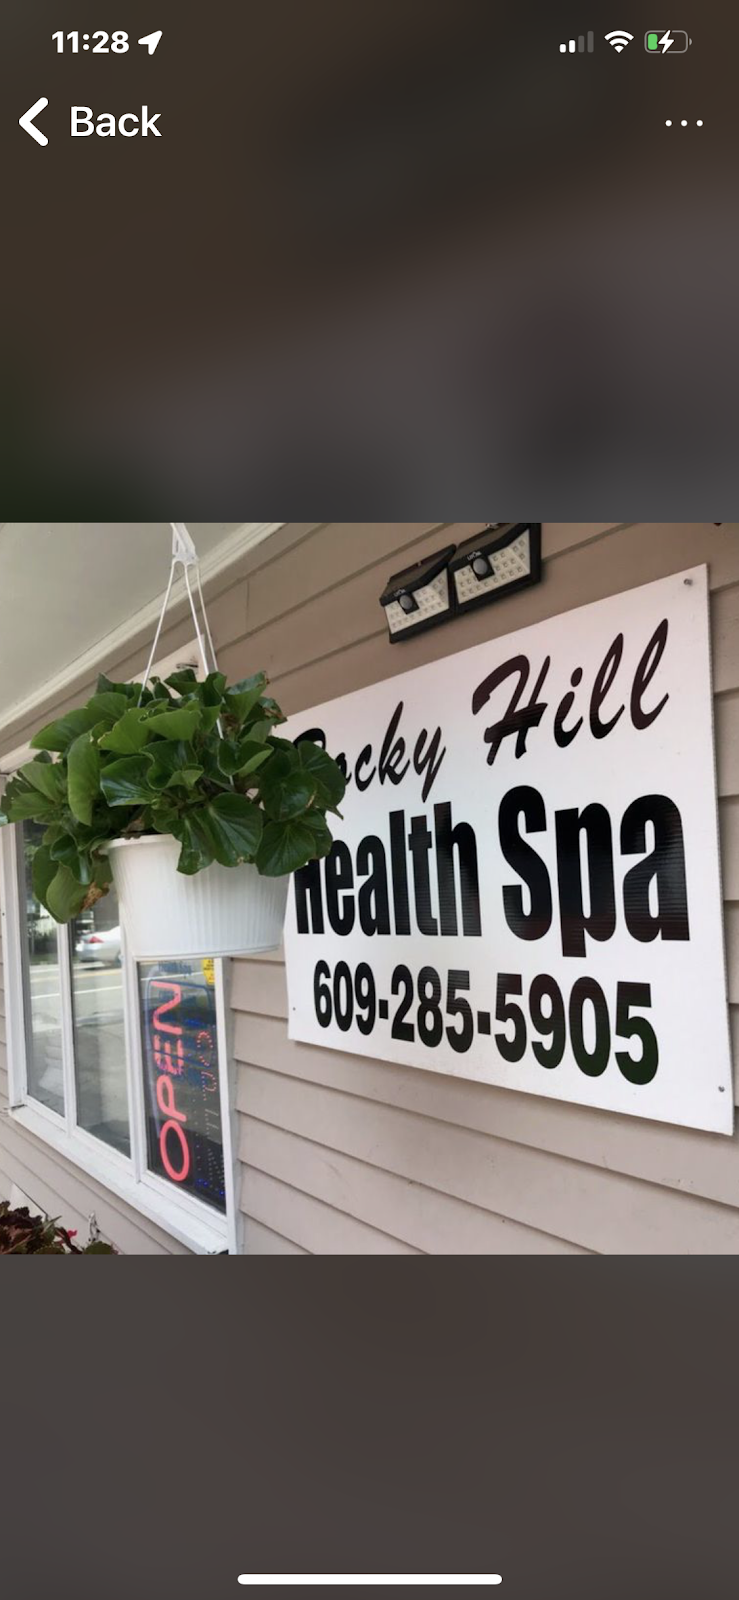 Rocky hill health spa | 131 Washington St, Rocky Hill, NJ 08553 | Phone: (609) 285-5905